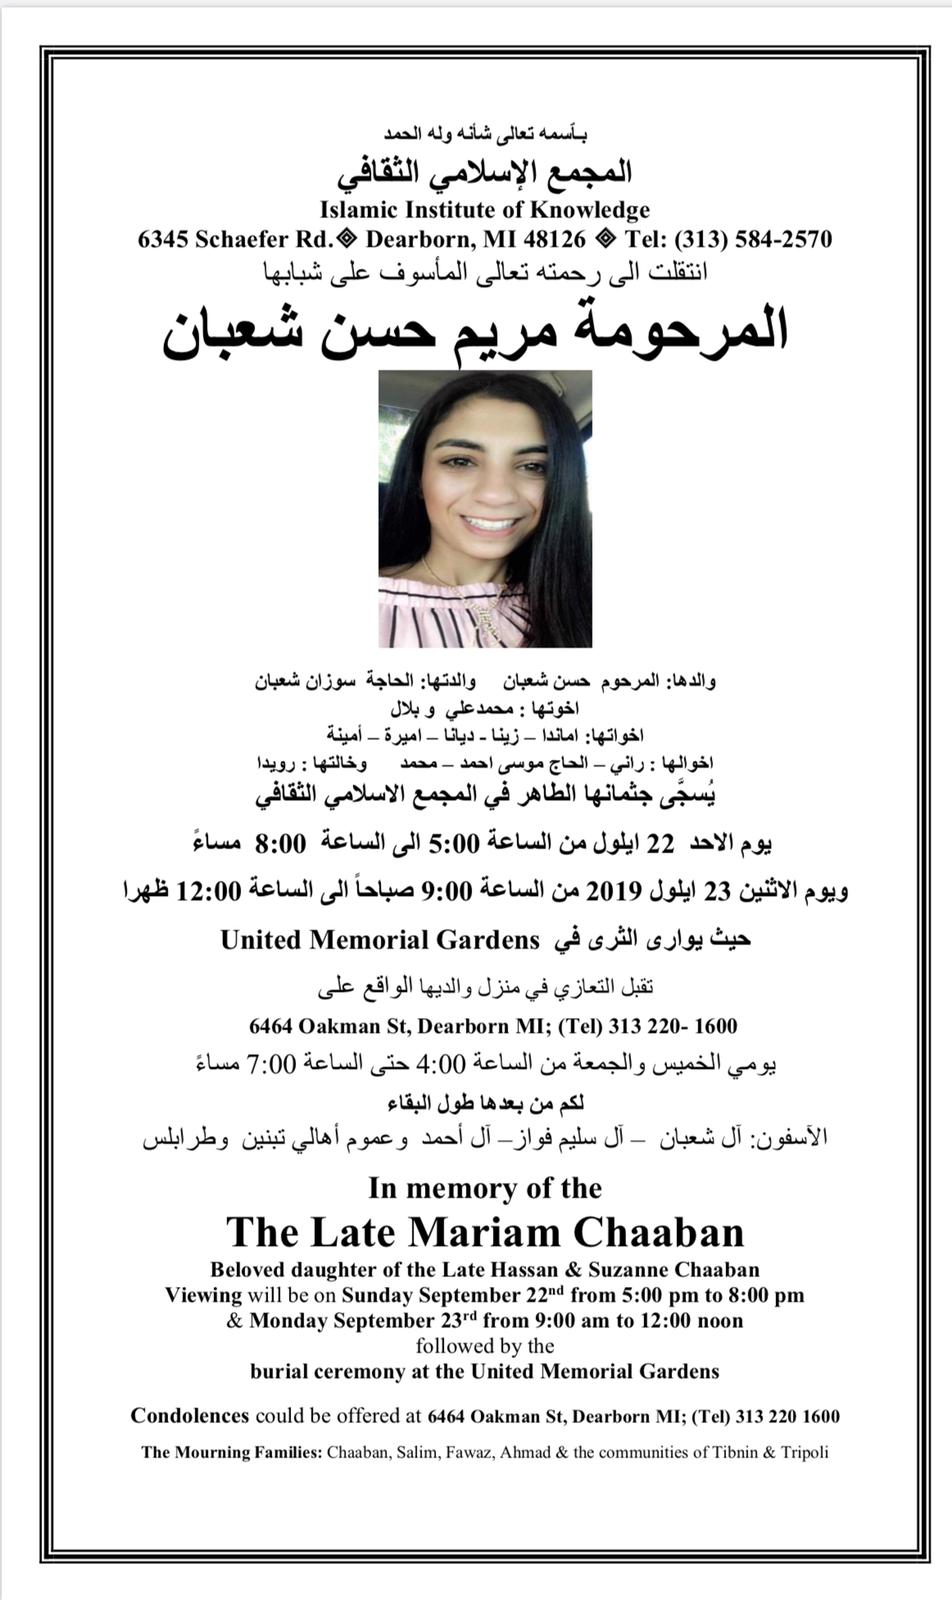 موعد جنازة المرحومة الشابة مريم حسن شعبان في ديربورن